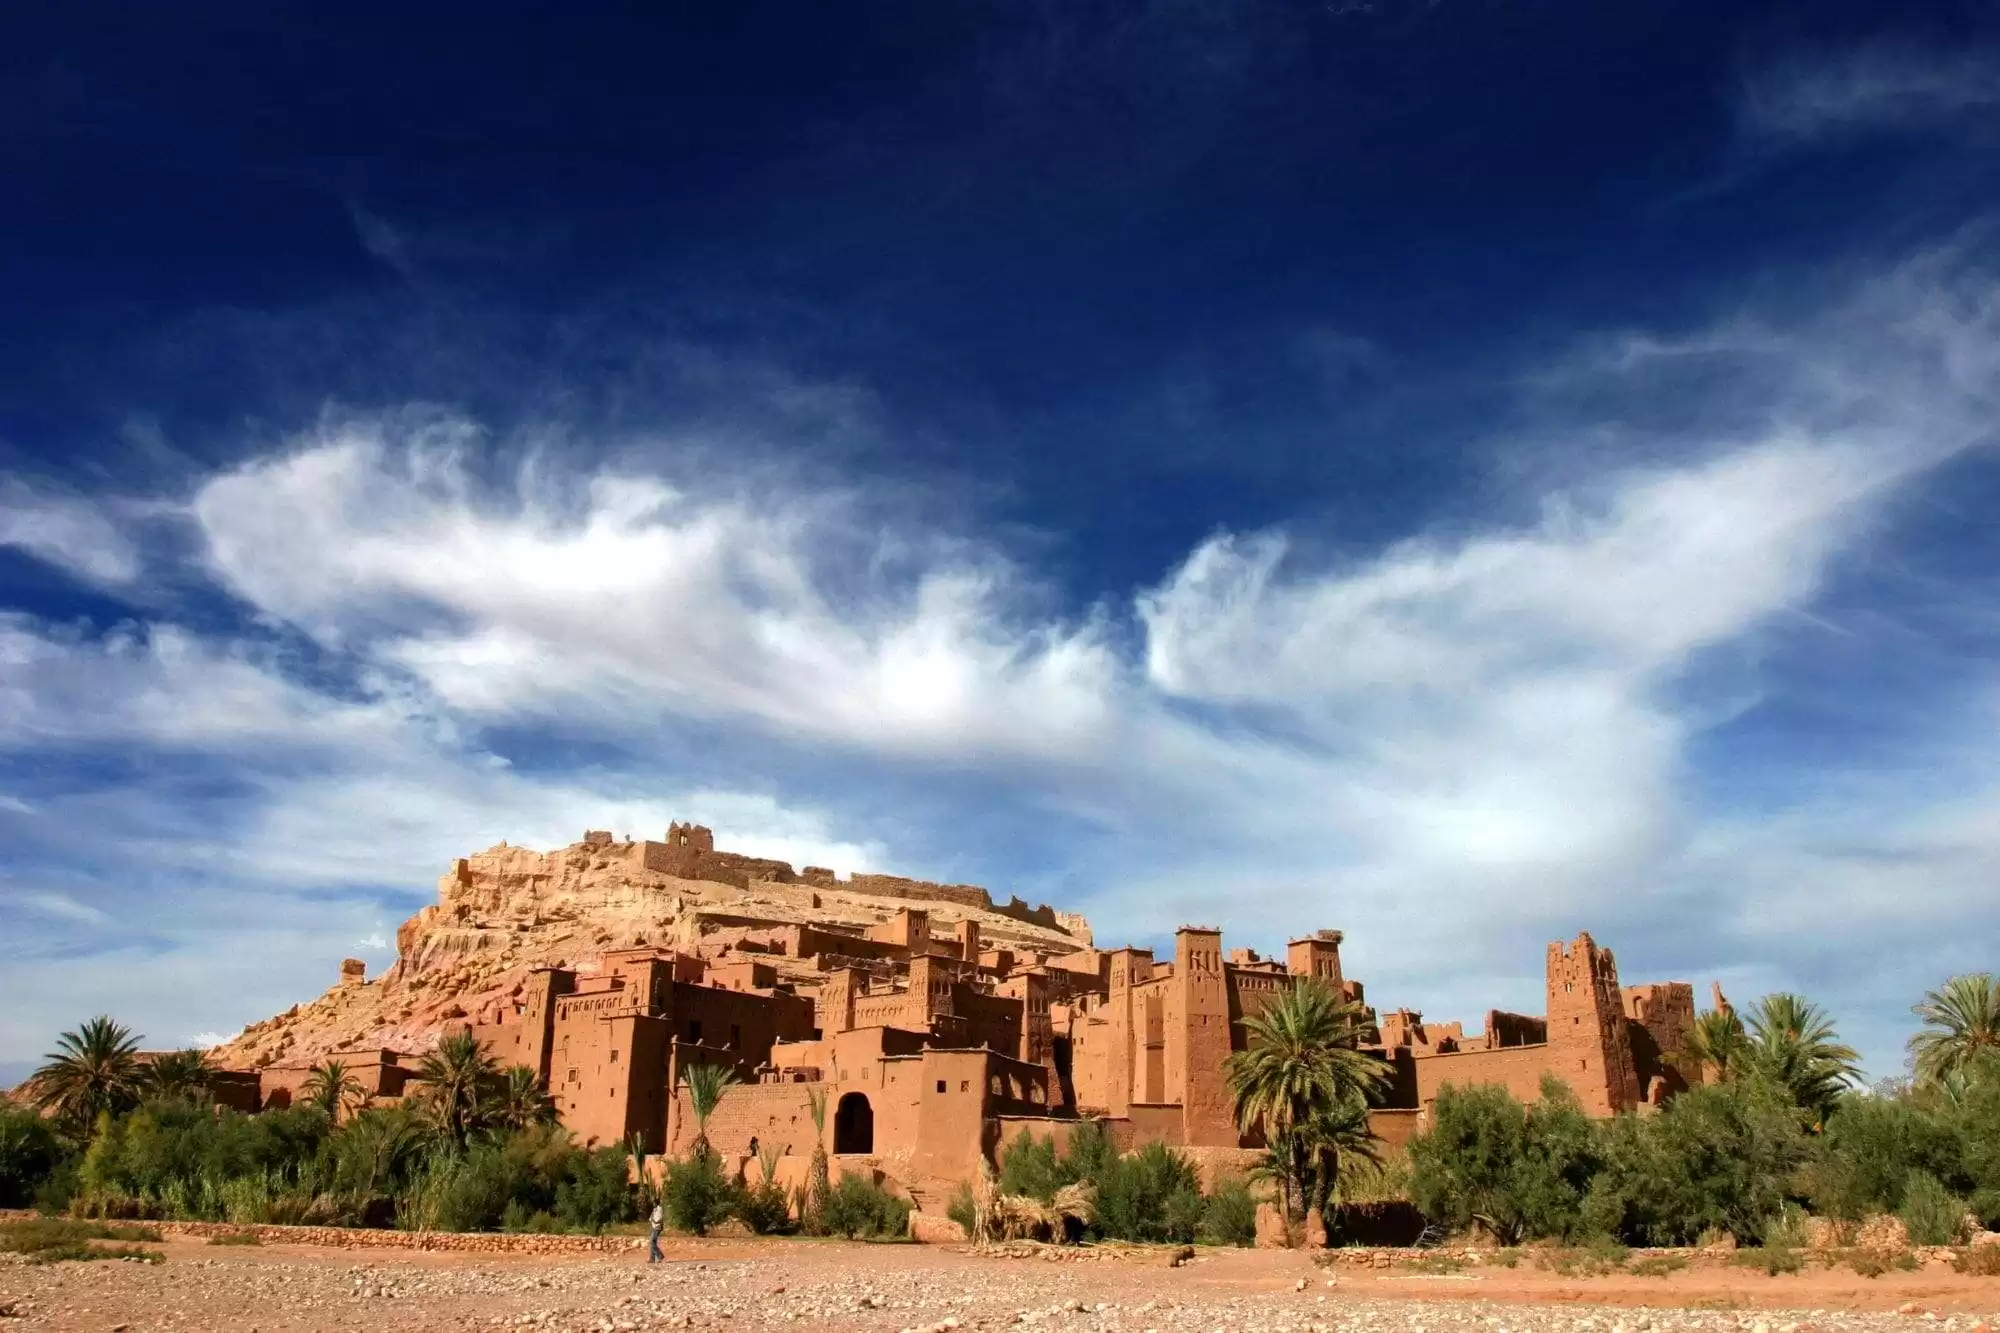 Día 06 Zagora – Valle del Draa – Ouarzazate – Marrakech